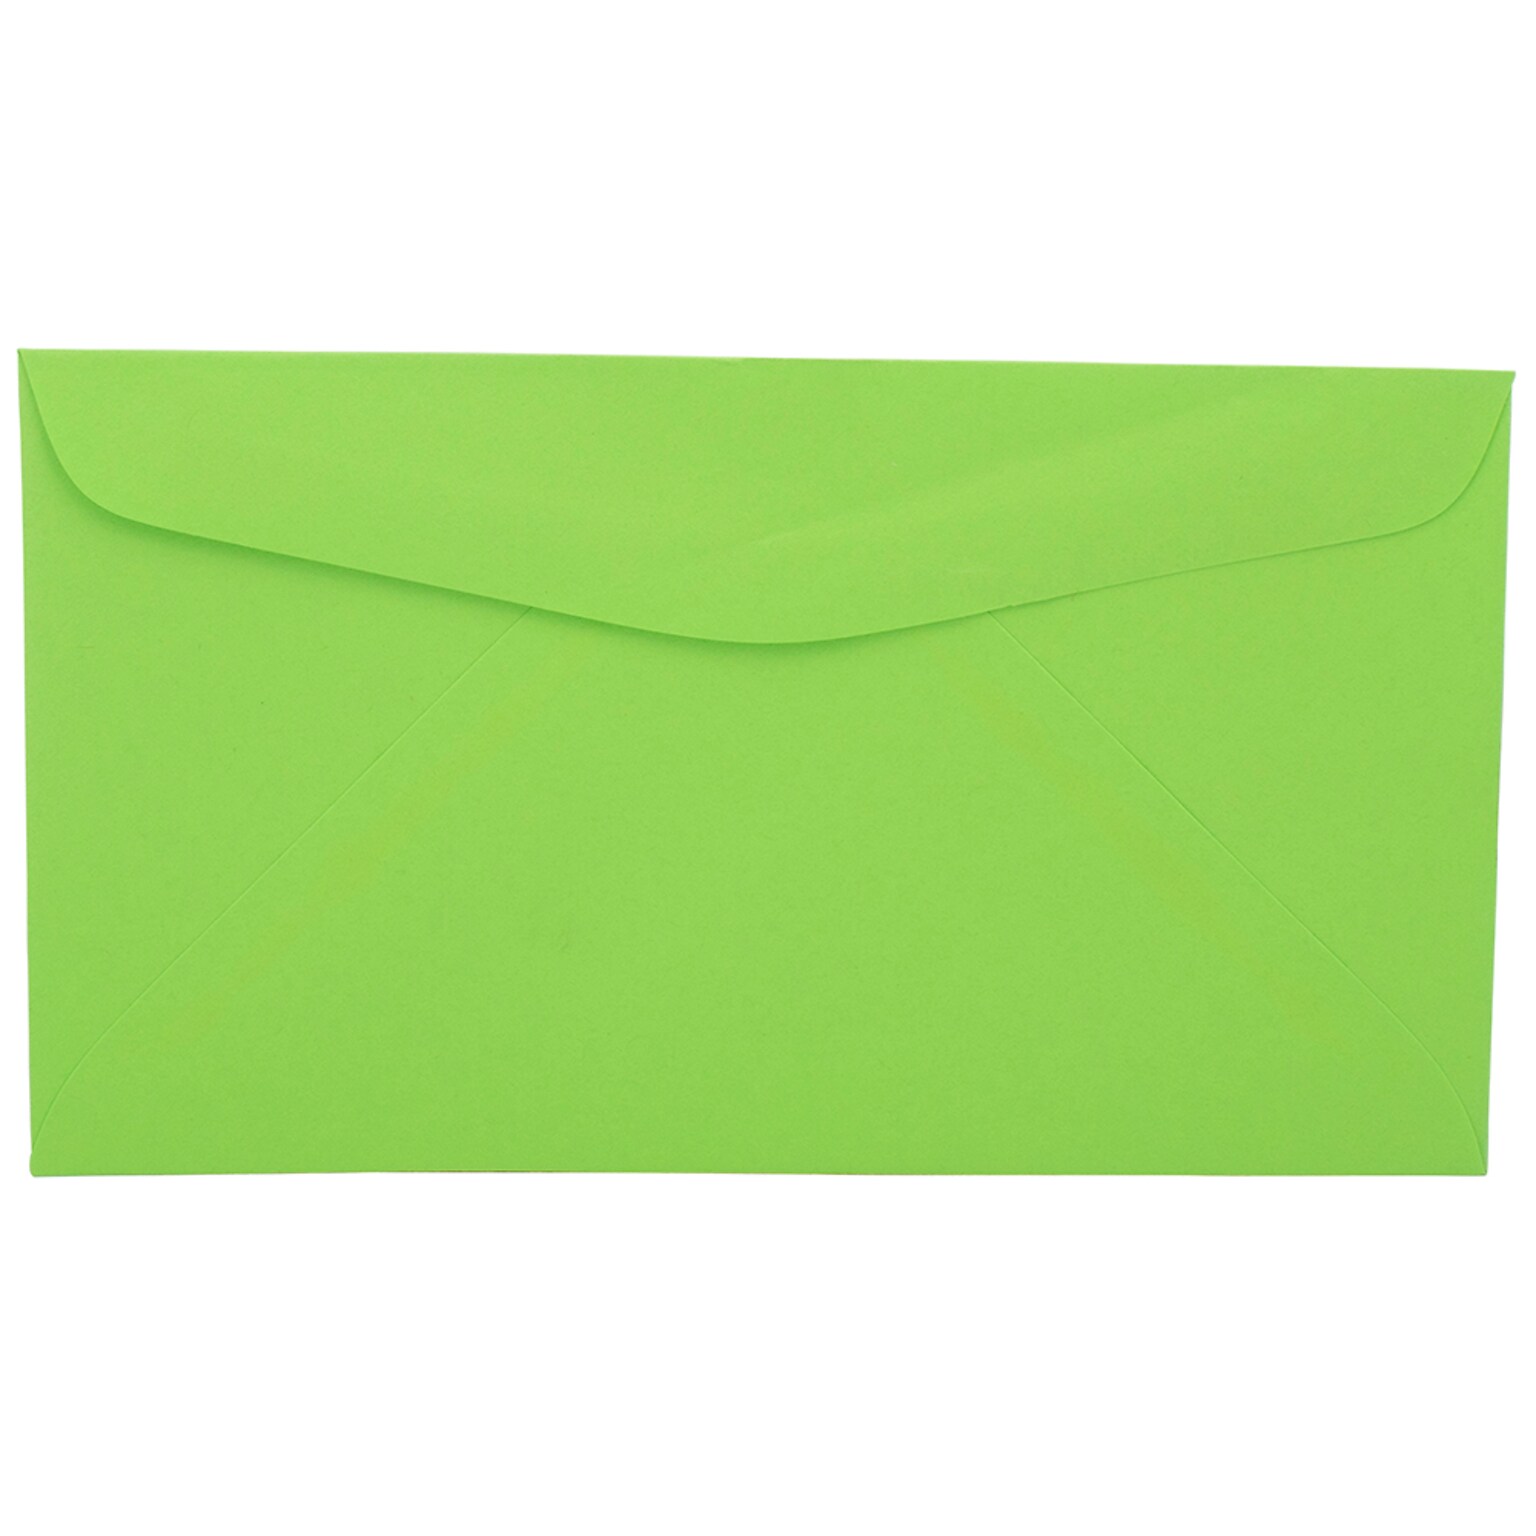 JAM Paper Open End #6 3/4 Invitation Envelope, 3 5/8 x 6 1/2, Light Green, 250/Pack (457611417H)